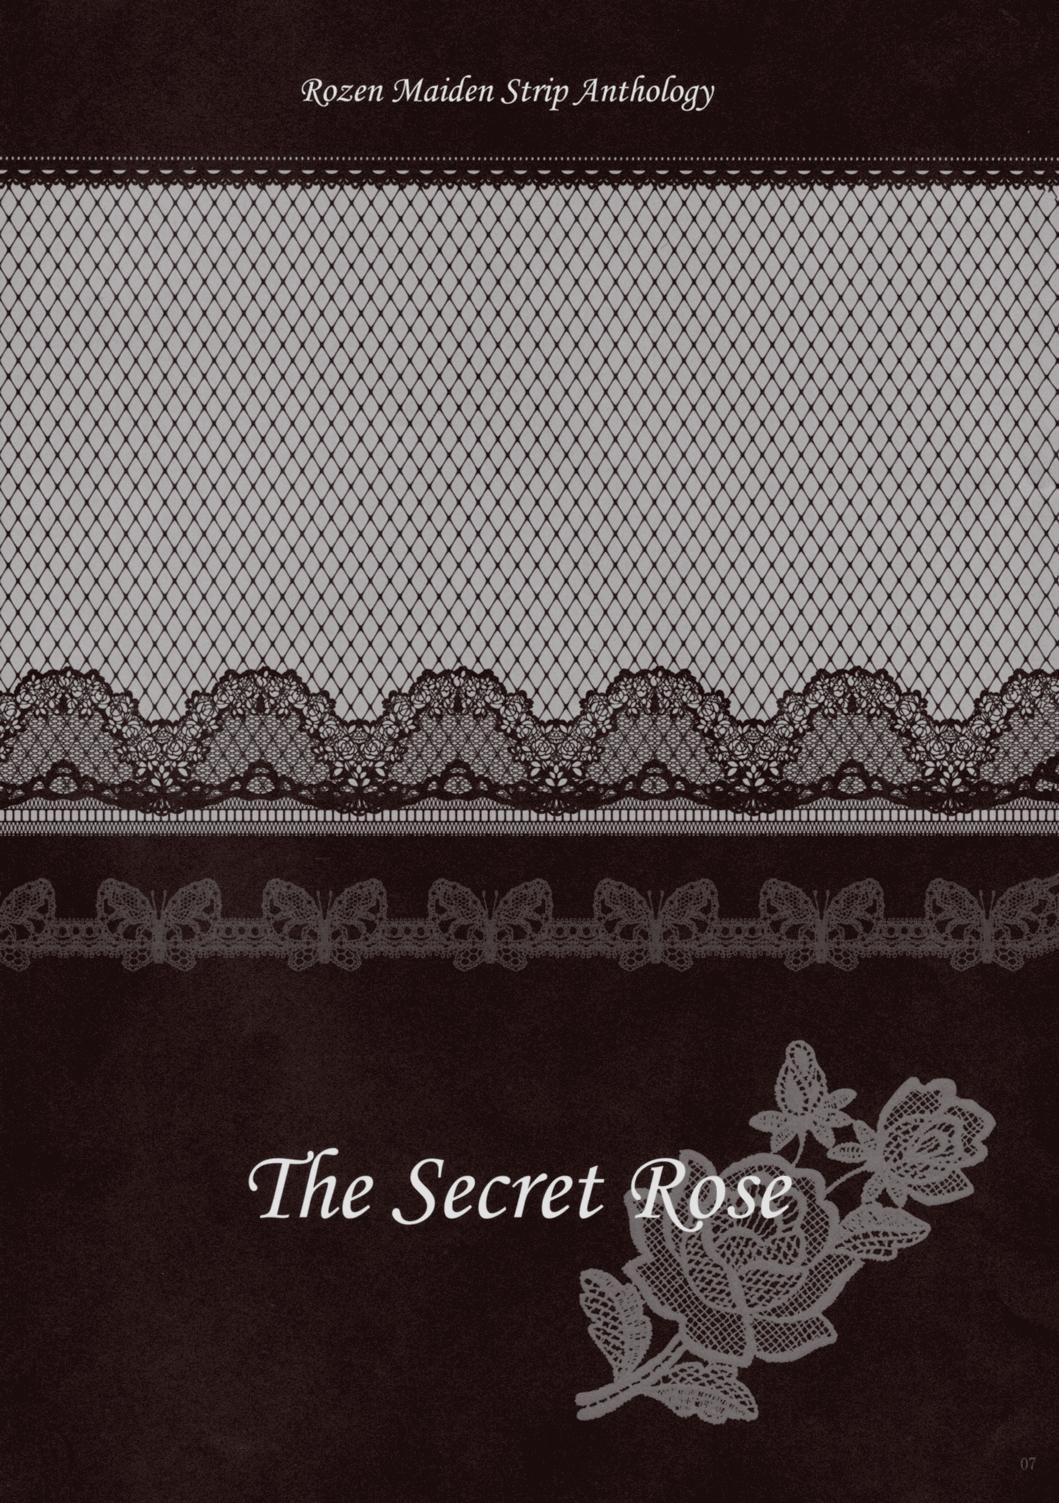 Rozen Maiden Strip Gallery "The Secret Rose" 6